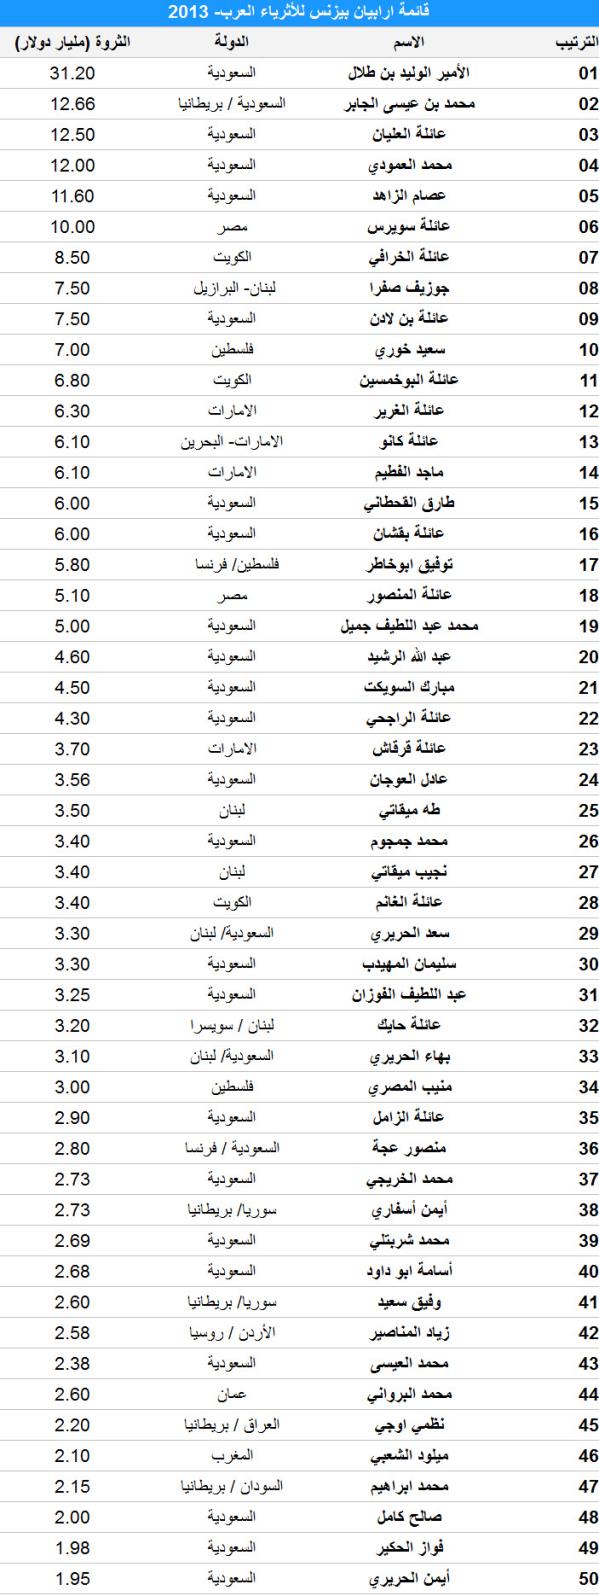 بيان أرابيان بيزنس قائمة أثرياء العرب 2013